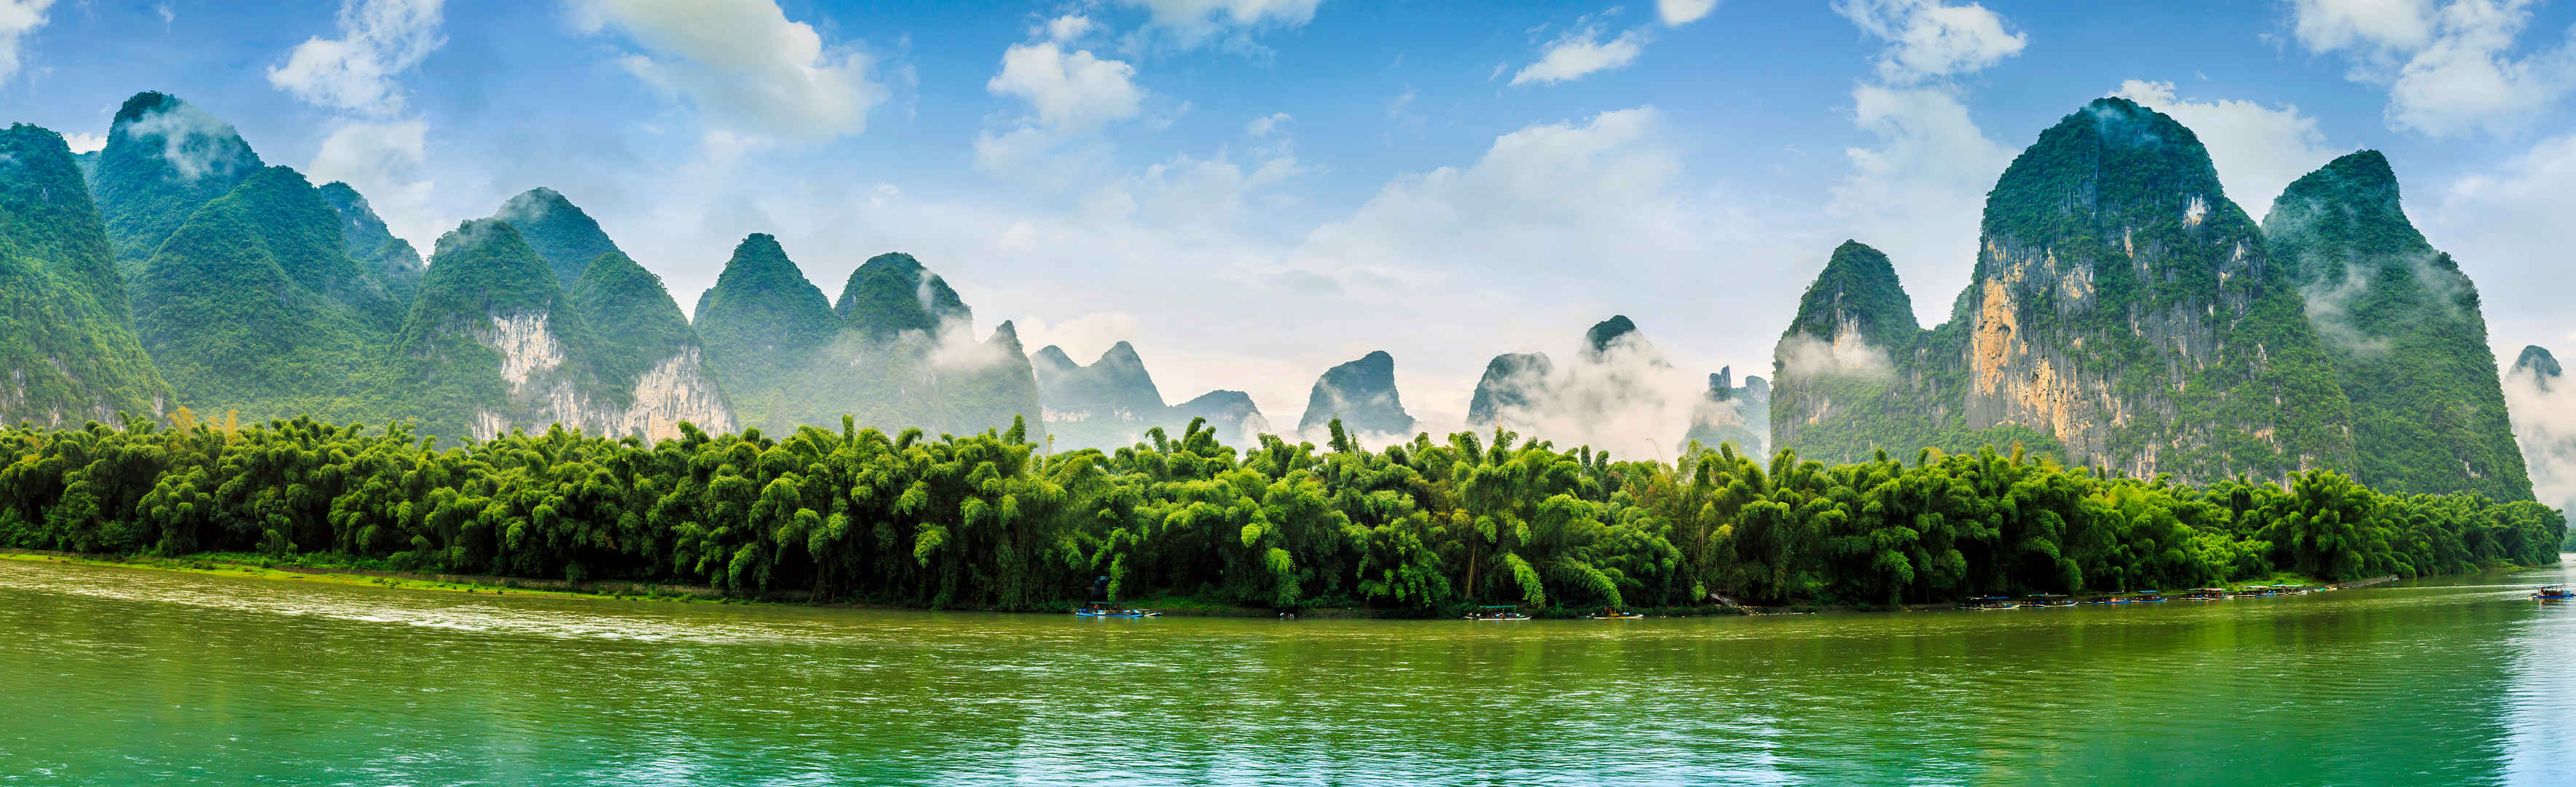 桂林美丽的自然景观壁纸